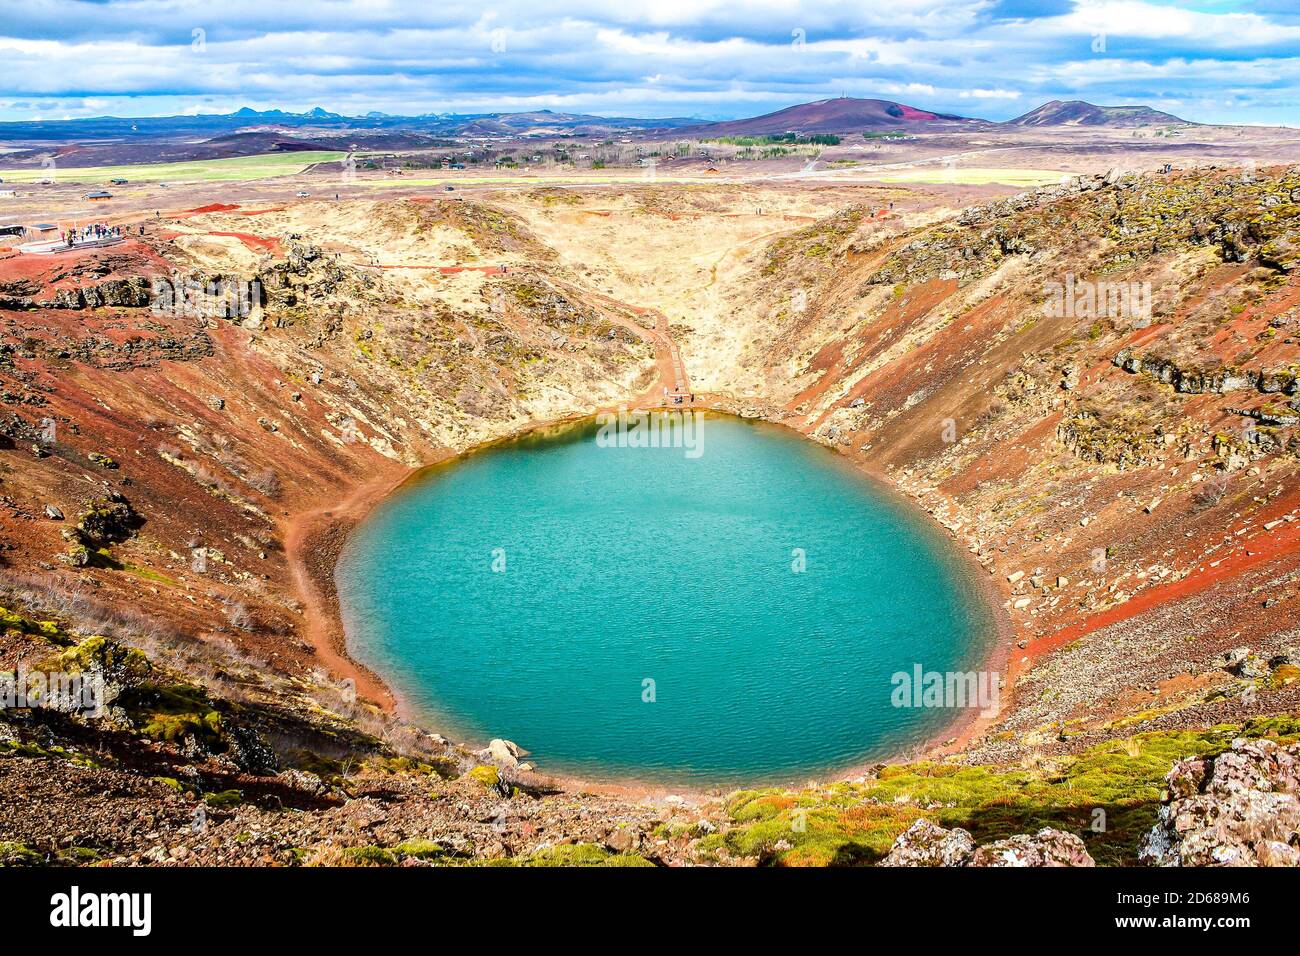 Kerith o Kerid è un lago vulcanico situato nella zona di Grmsnes nel sud dell'Islanda, lungo il cerchio d'oro. Foto Stock